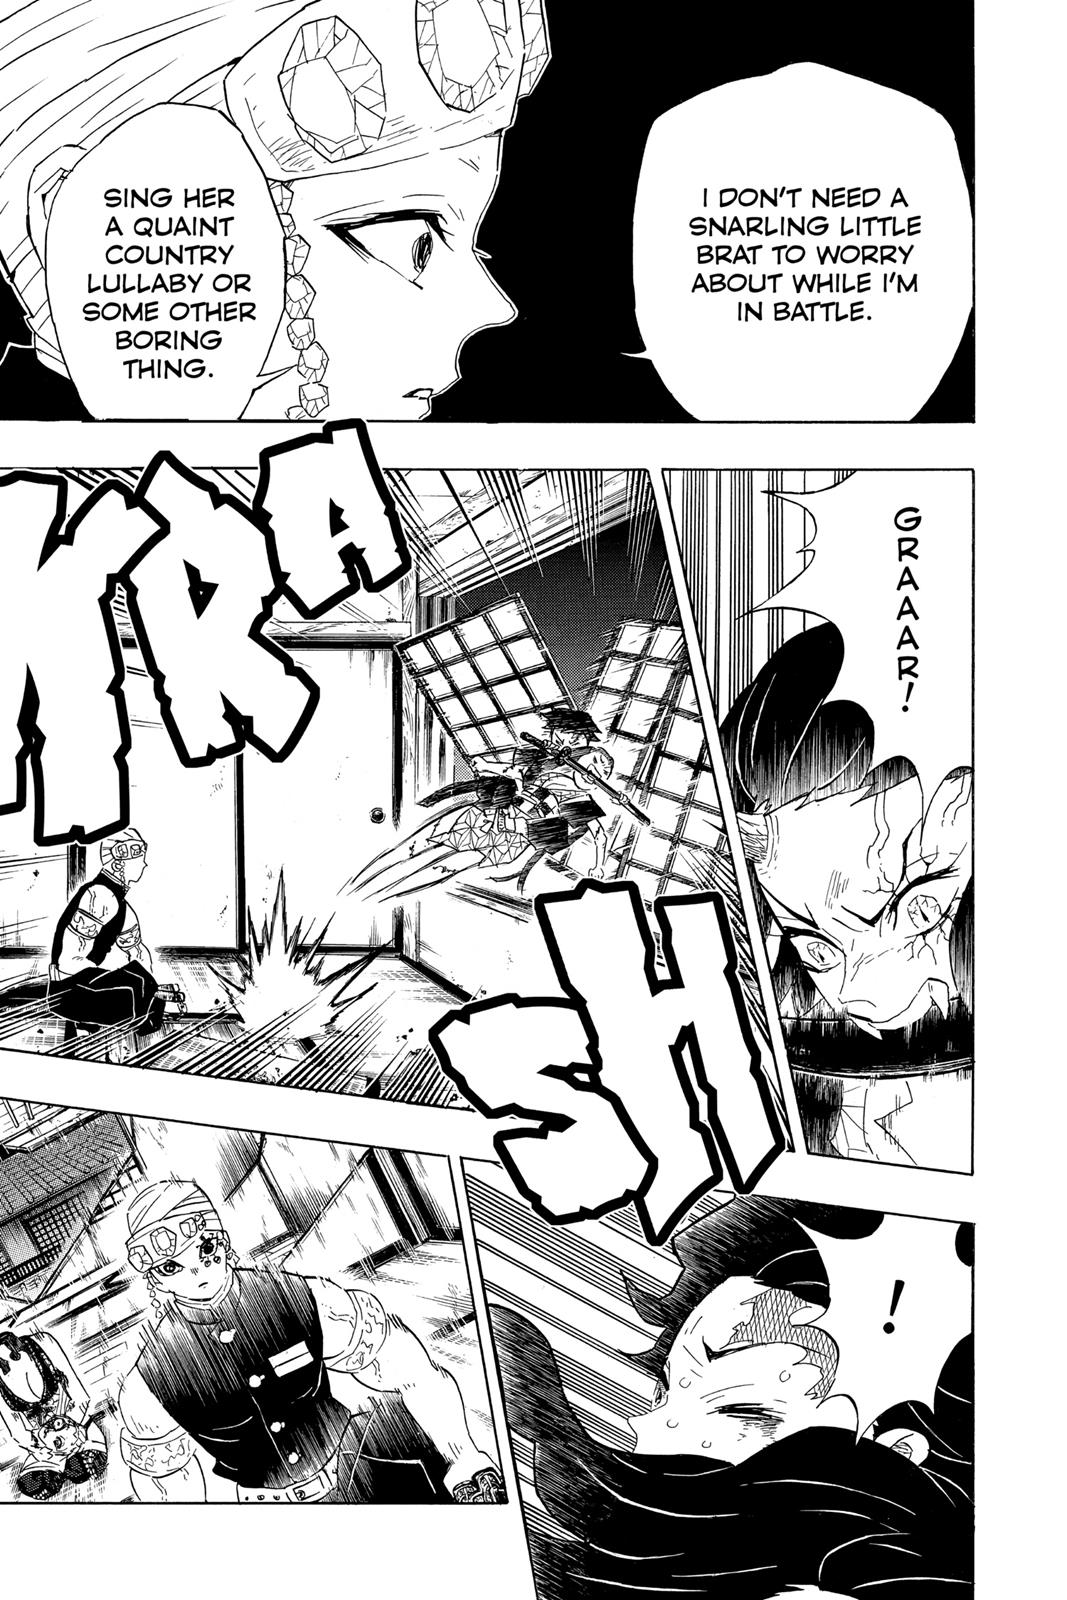 Demon Slayer Manga Manga Chapter - 85 - image 3